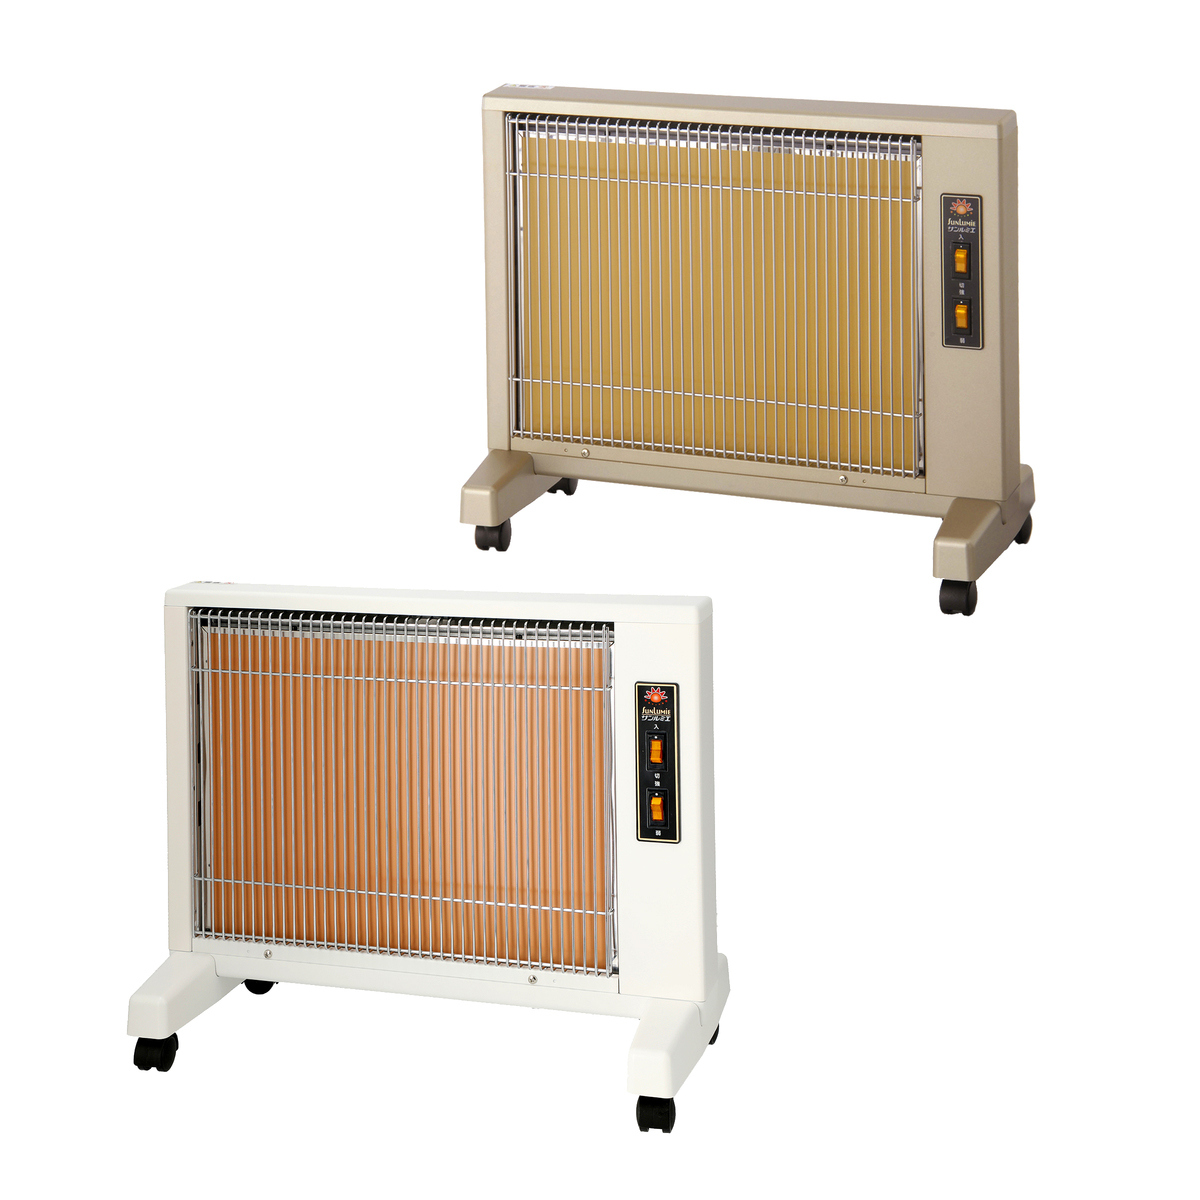 遠赤外線暖房器 サンルミエ キュート カラーが選べる2台